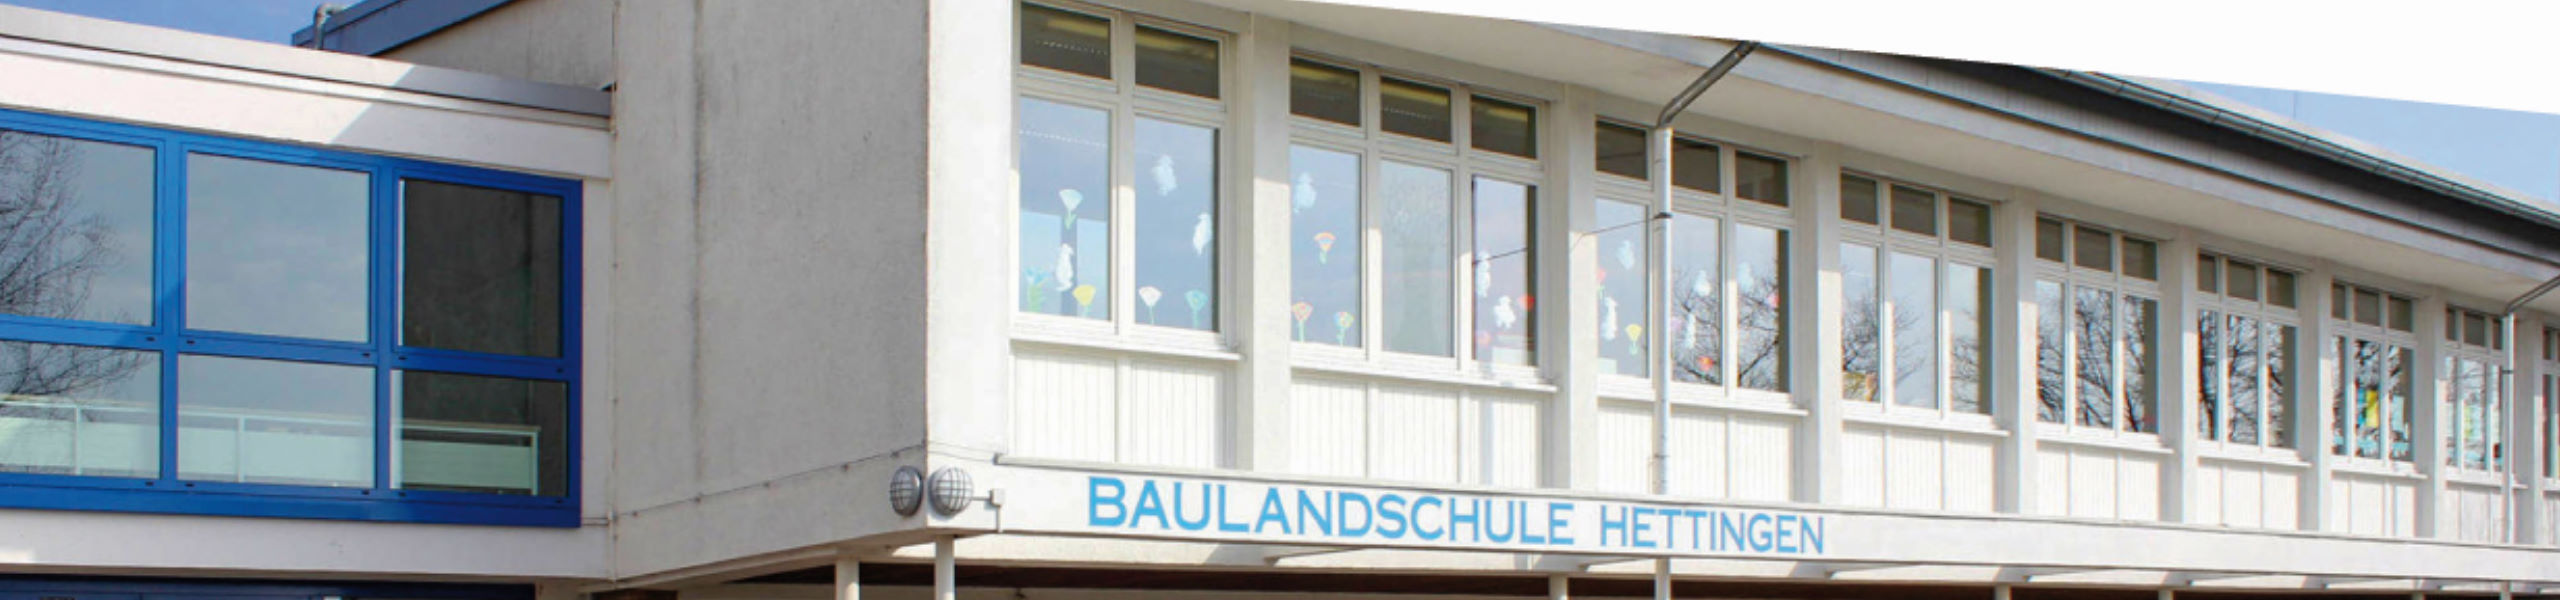 Baulandschule Hettingen - Infos für neue Schüler